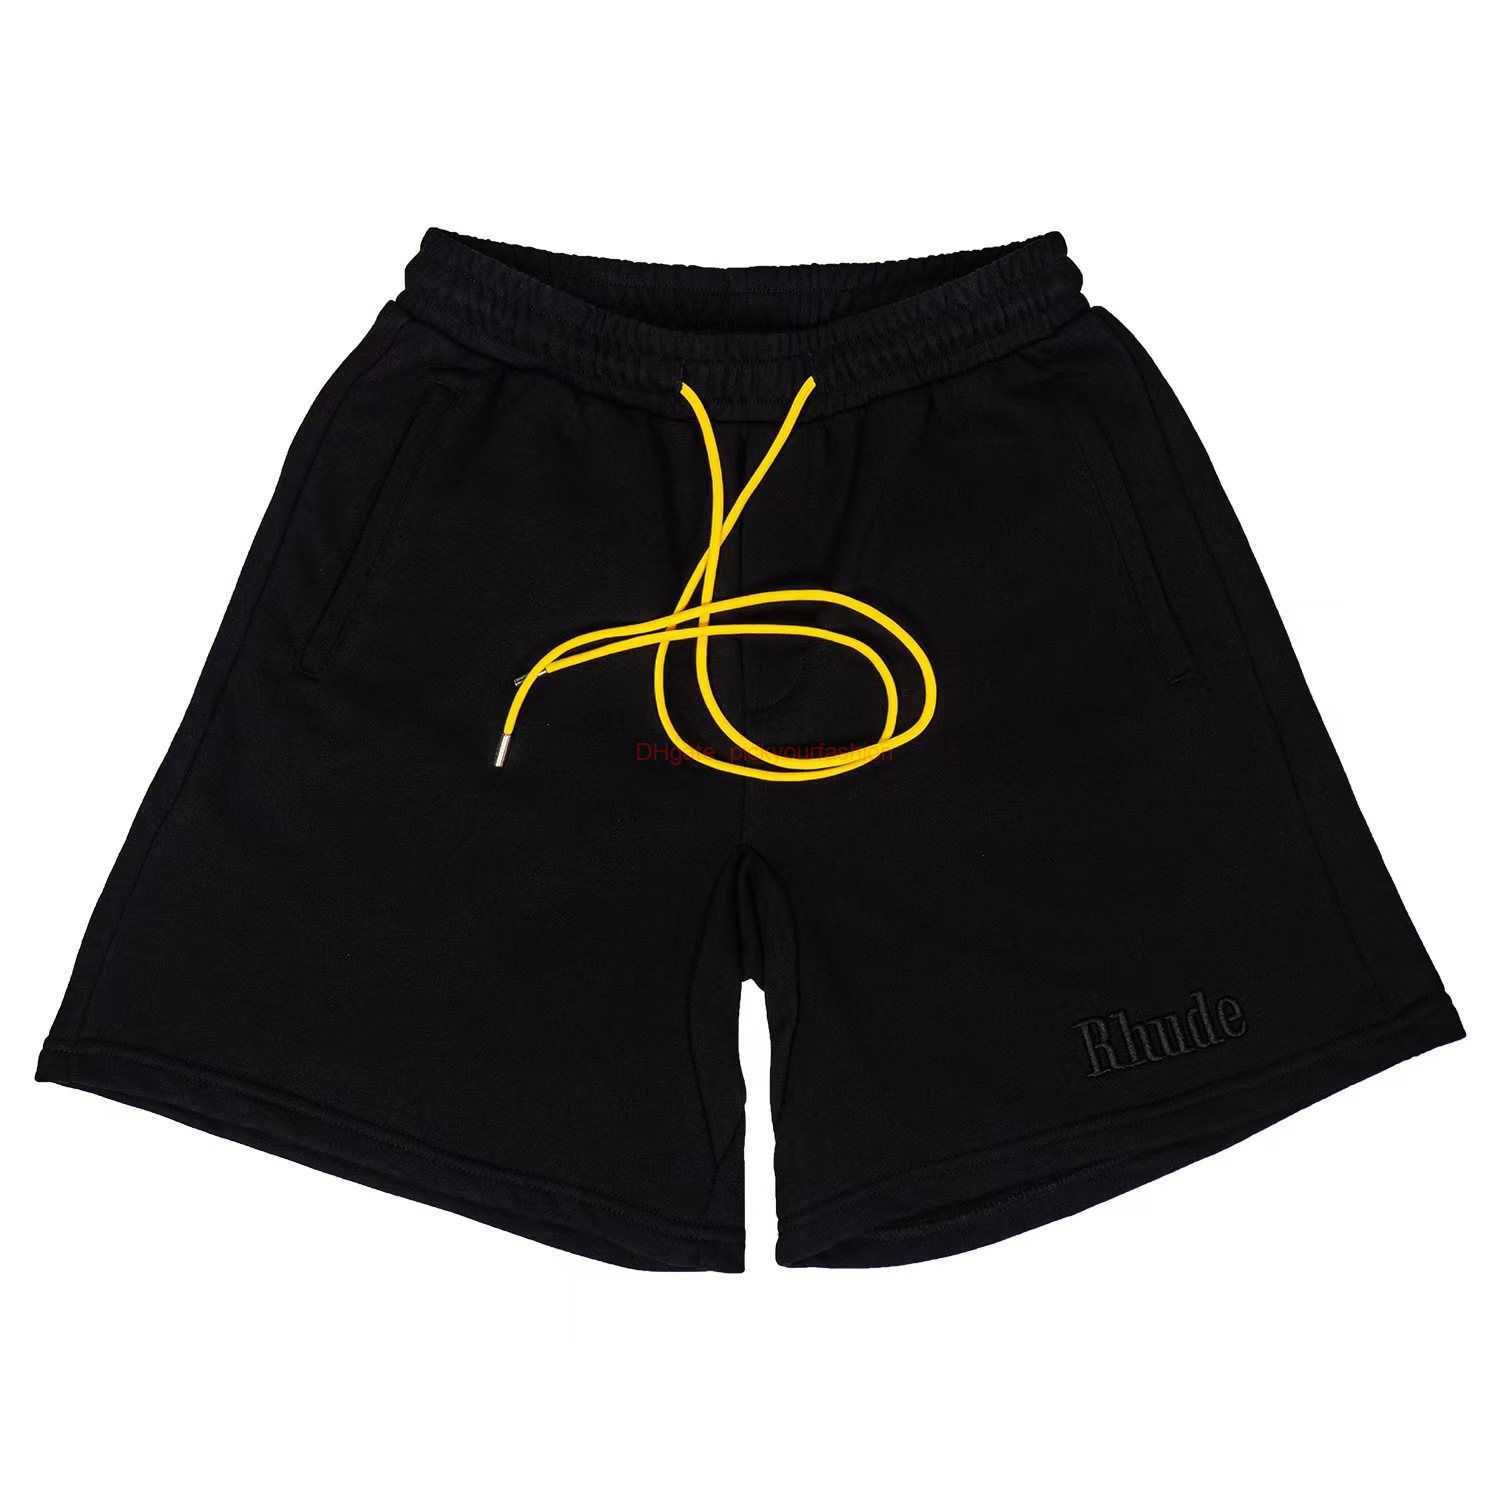 Tasarımcı Kısa Moda Sıradan Giyim Plaj Şortları Rhude İşlemeli Düz Renk Sıradan Spor Capris Trendy Marka Gevşek Drawstring Shorts Joggers Sportswear OU